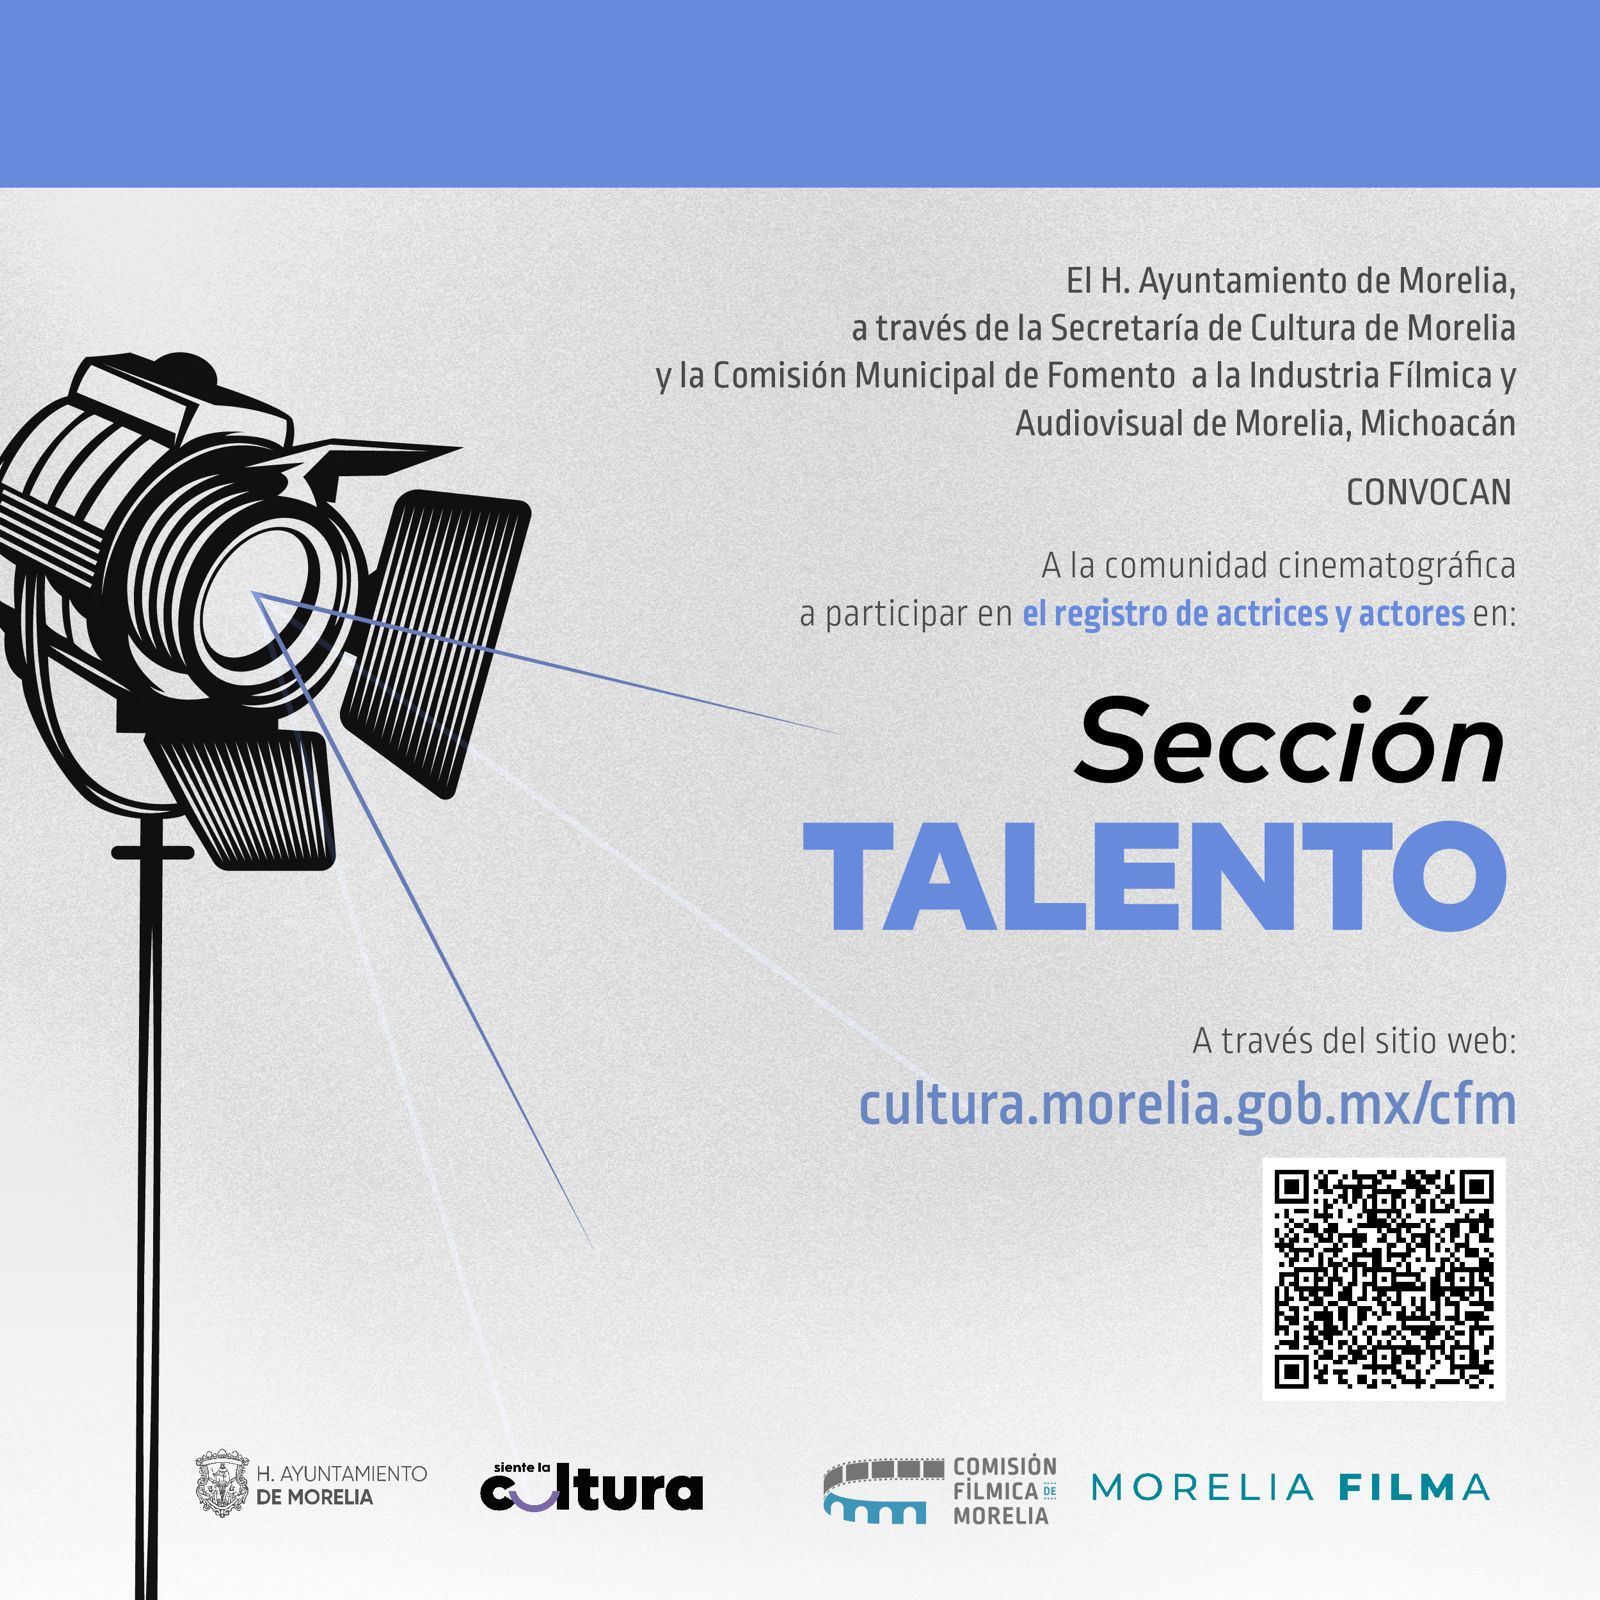 SeCultura Morelia invita a comunidad cinematográfica al registro de actrices y actores